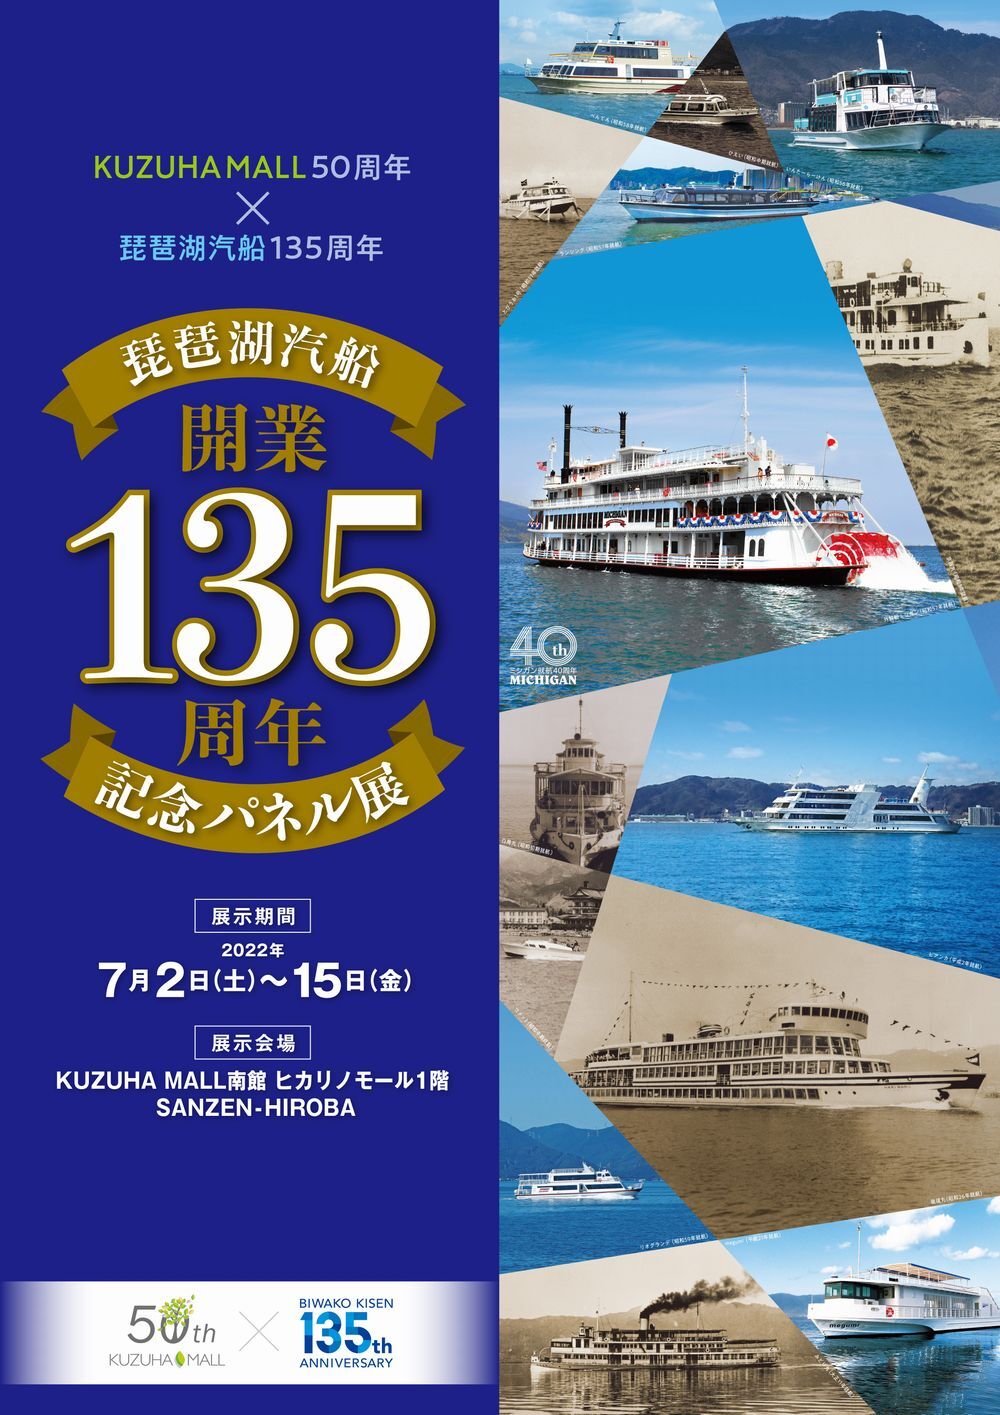 琵琶湖汽船開業135周年記念パネル展